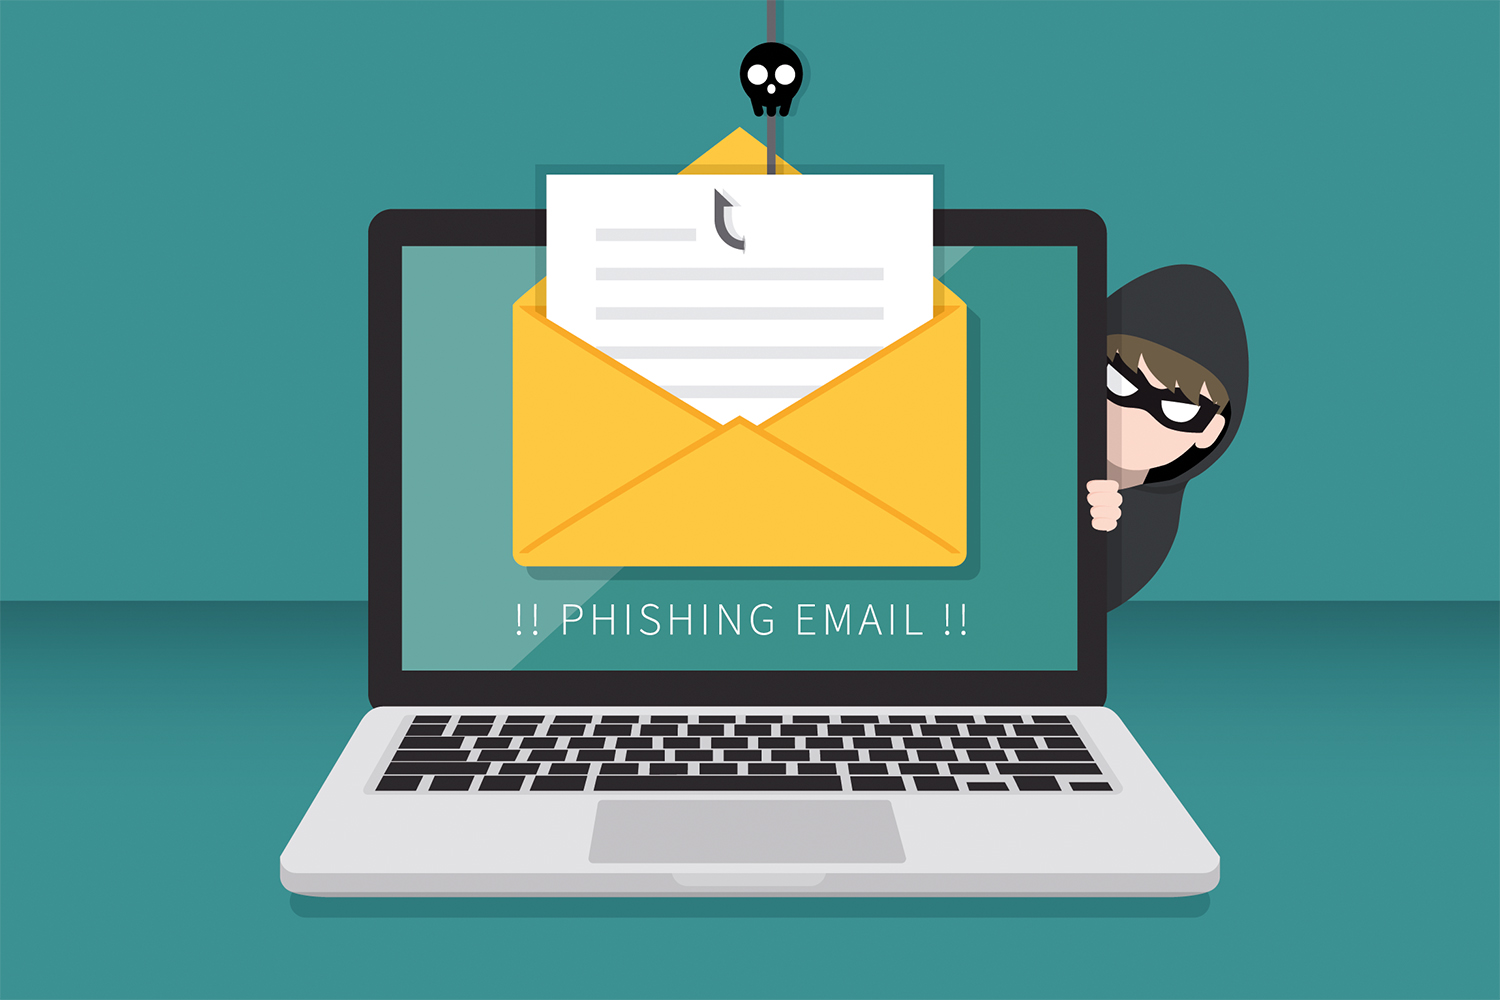 Pishing son correos maliciosos con información falsa. (foto: Segurilatam)